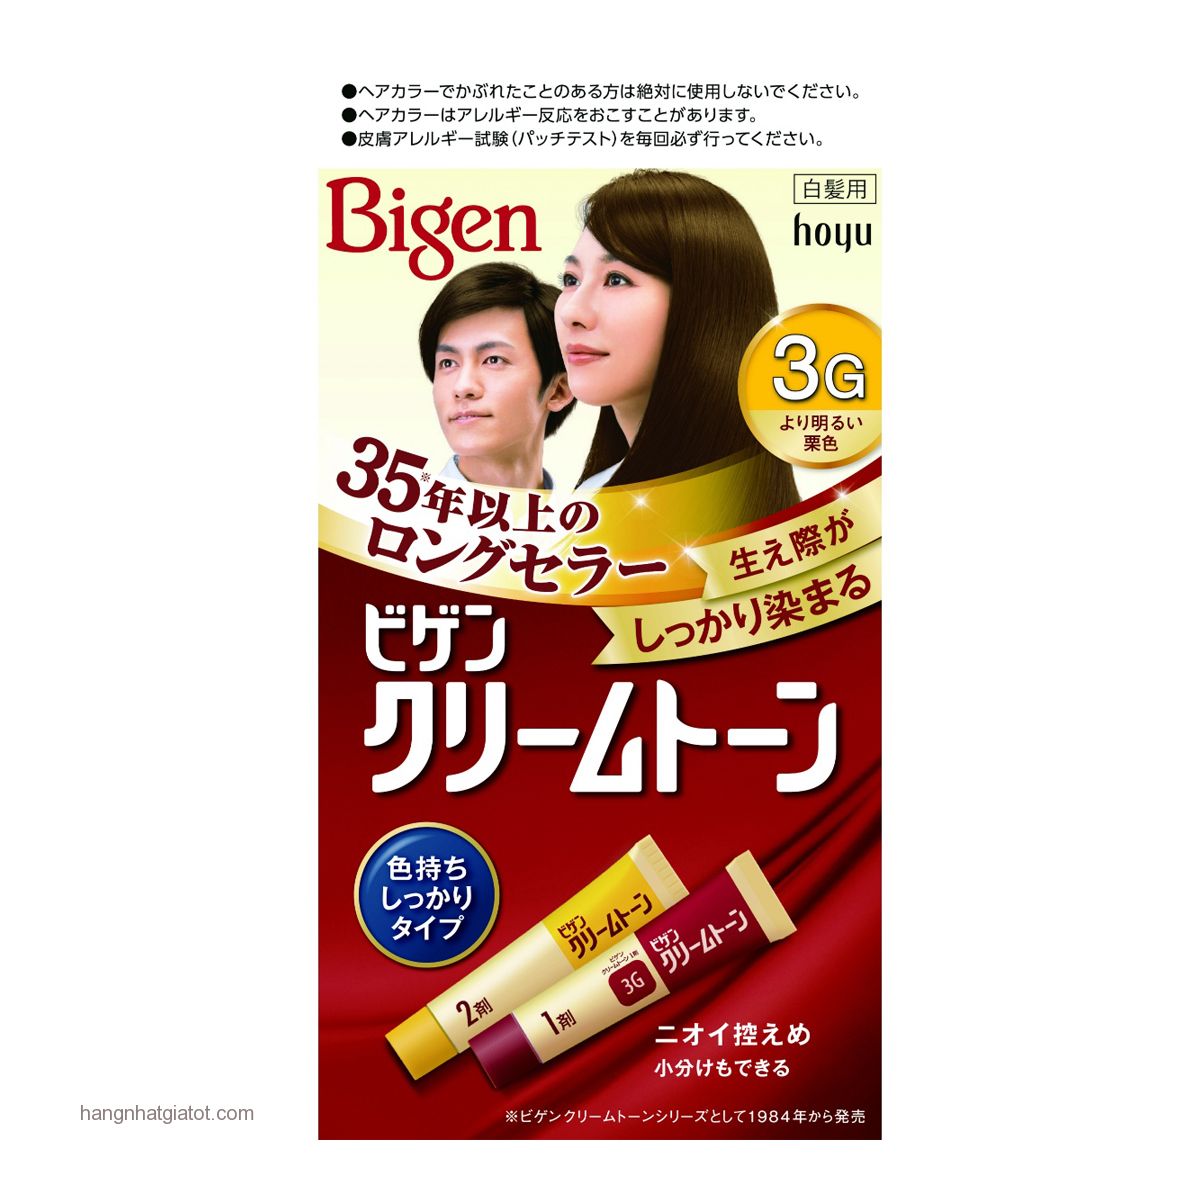 Thuốc nhuộm tóc Bigen 3G-Nhật Bản: Thử ngay thuốc nhuộm tóc Bigen 3G-Nhật Bản và giúp tóc bạn trở nên bắt mắt và đầy sức sống. Được thiết kế với các thành phần tự nhiên và an toàn cho tóc của bạn, không có gì tuyệt vời hơn khi thay đổi diện mạo chỉ trong vài giây.